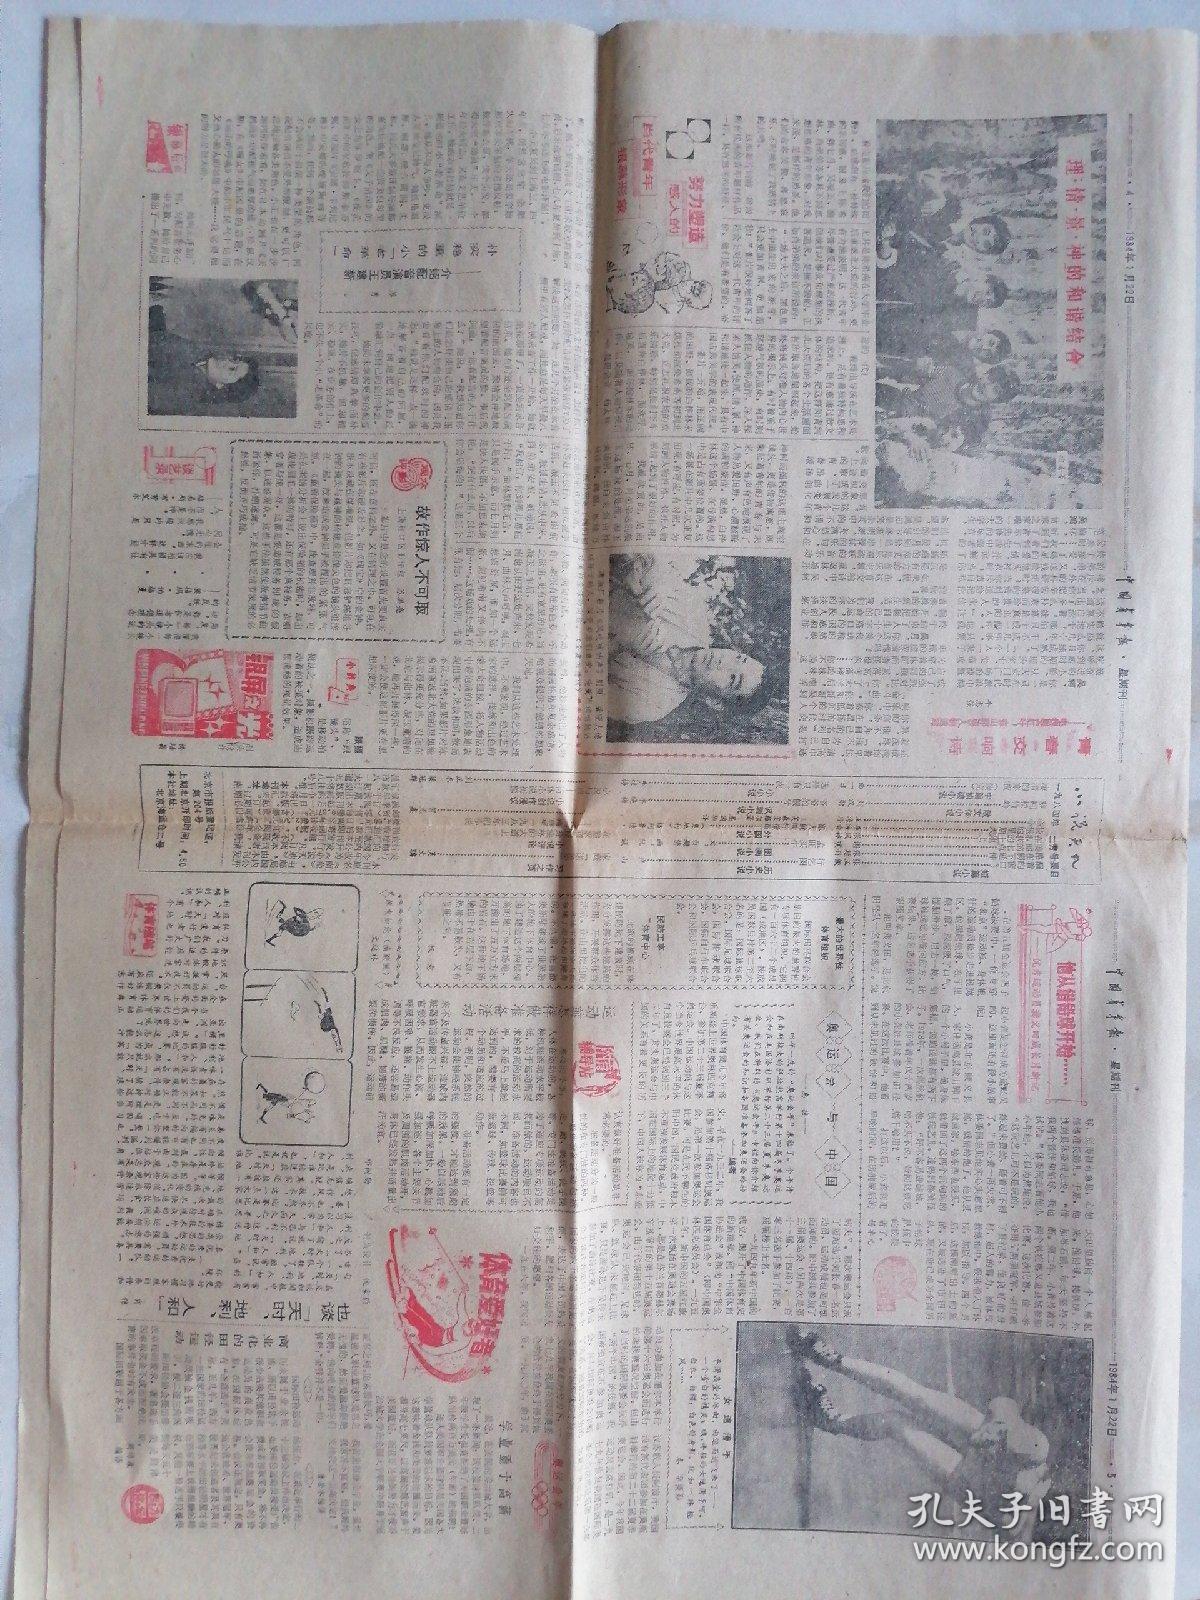 中国青年报（星期刊）1984年1月22日（第4279期共8版）